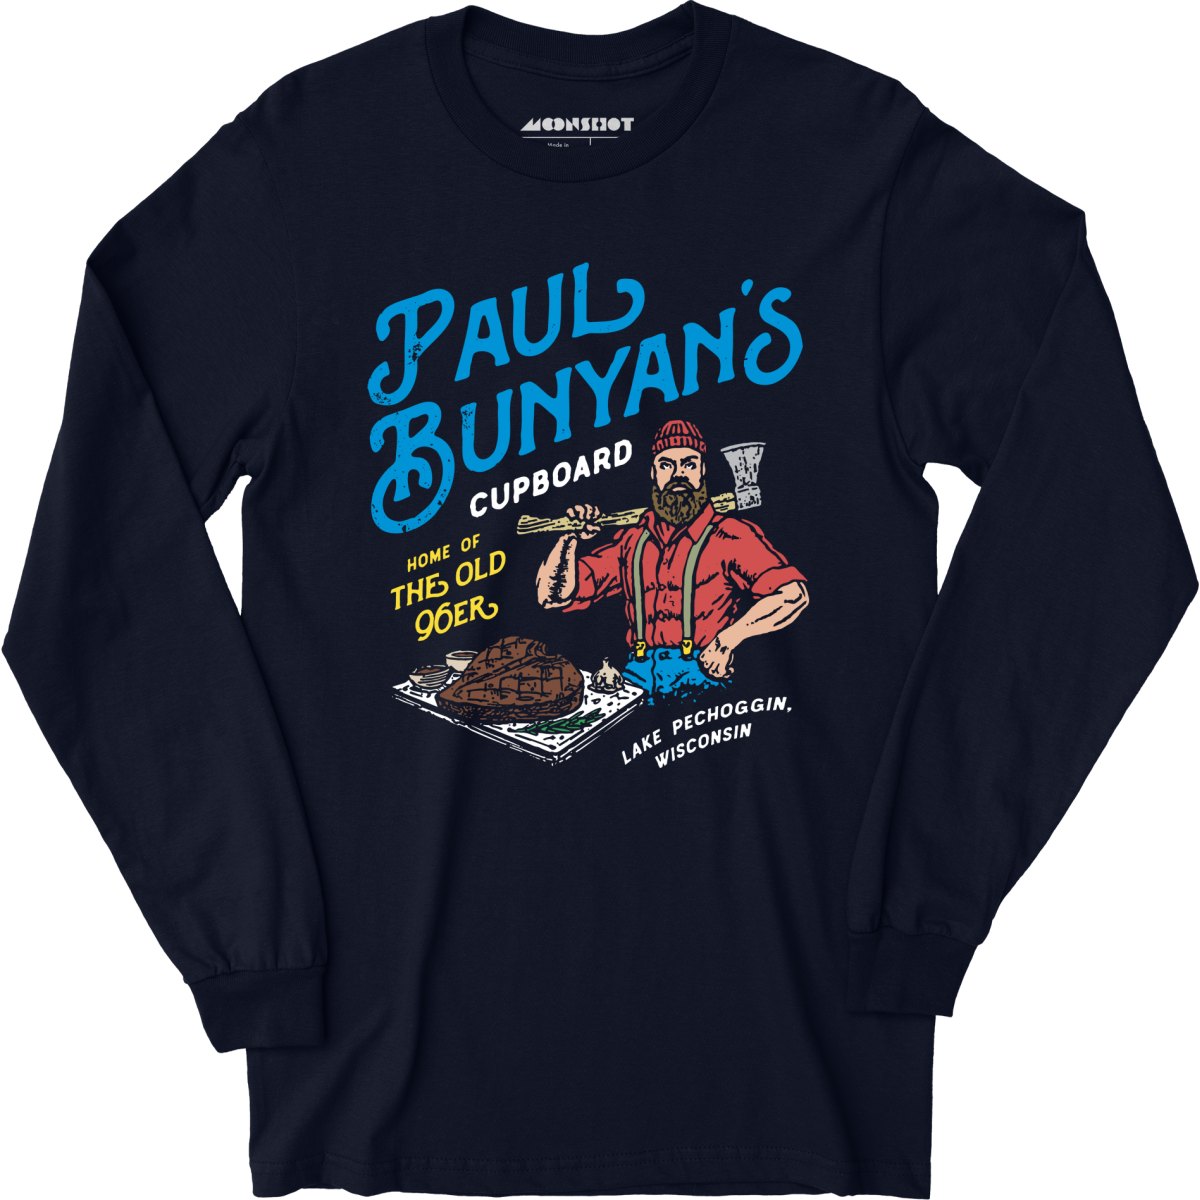 Paul Bunyan's Cupboard - Long Sleeve T-Shirt